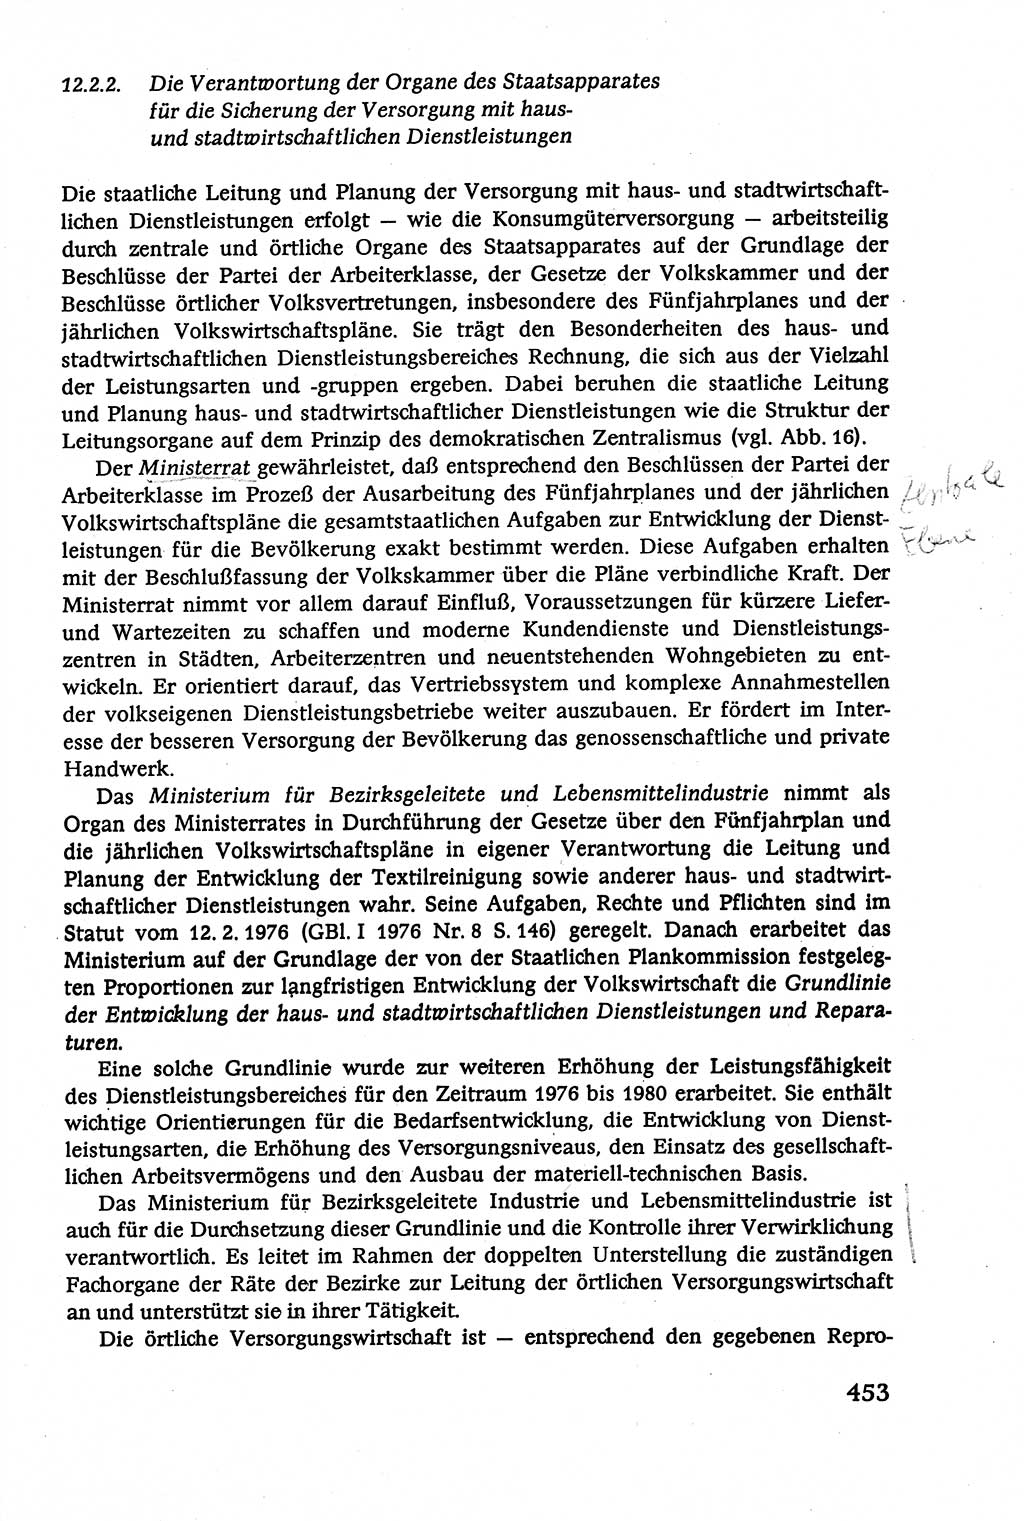 Verwaltungsrecht [Deutsche Demokratische Republik (DDR)], Lehrbuch 1979, Seite 453 (Verw.-R. DDR Lb. 1979, S. 453)